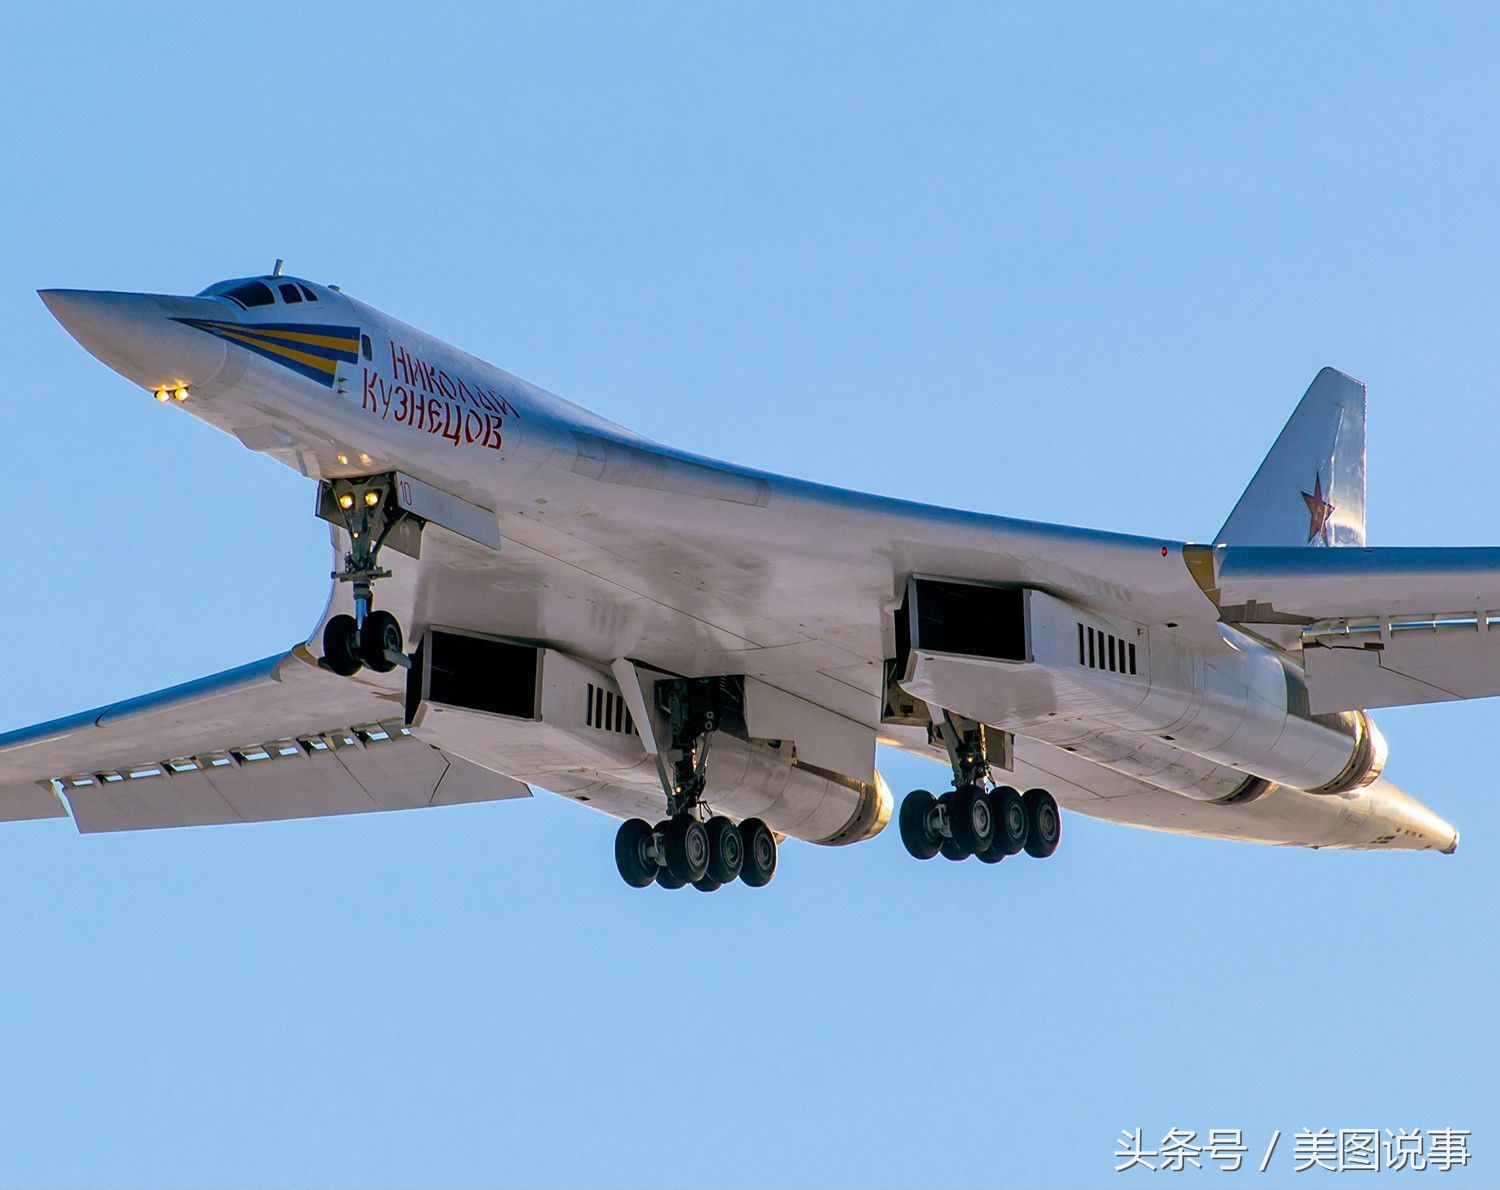 优雅的白天鹅,俄罗斯图160战略轰炸机高清大图